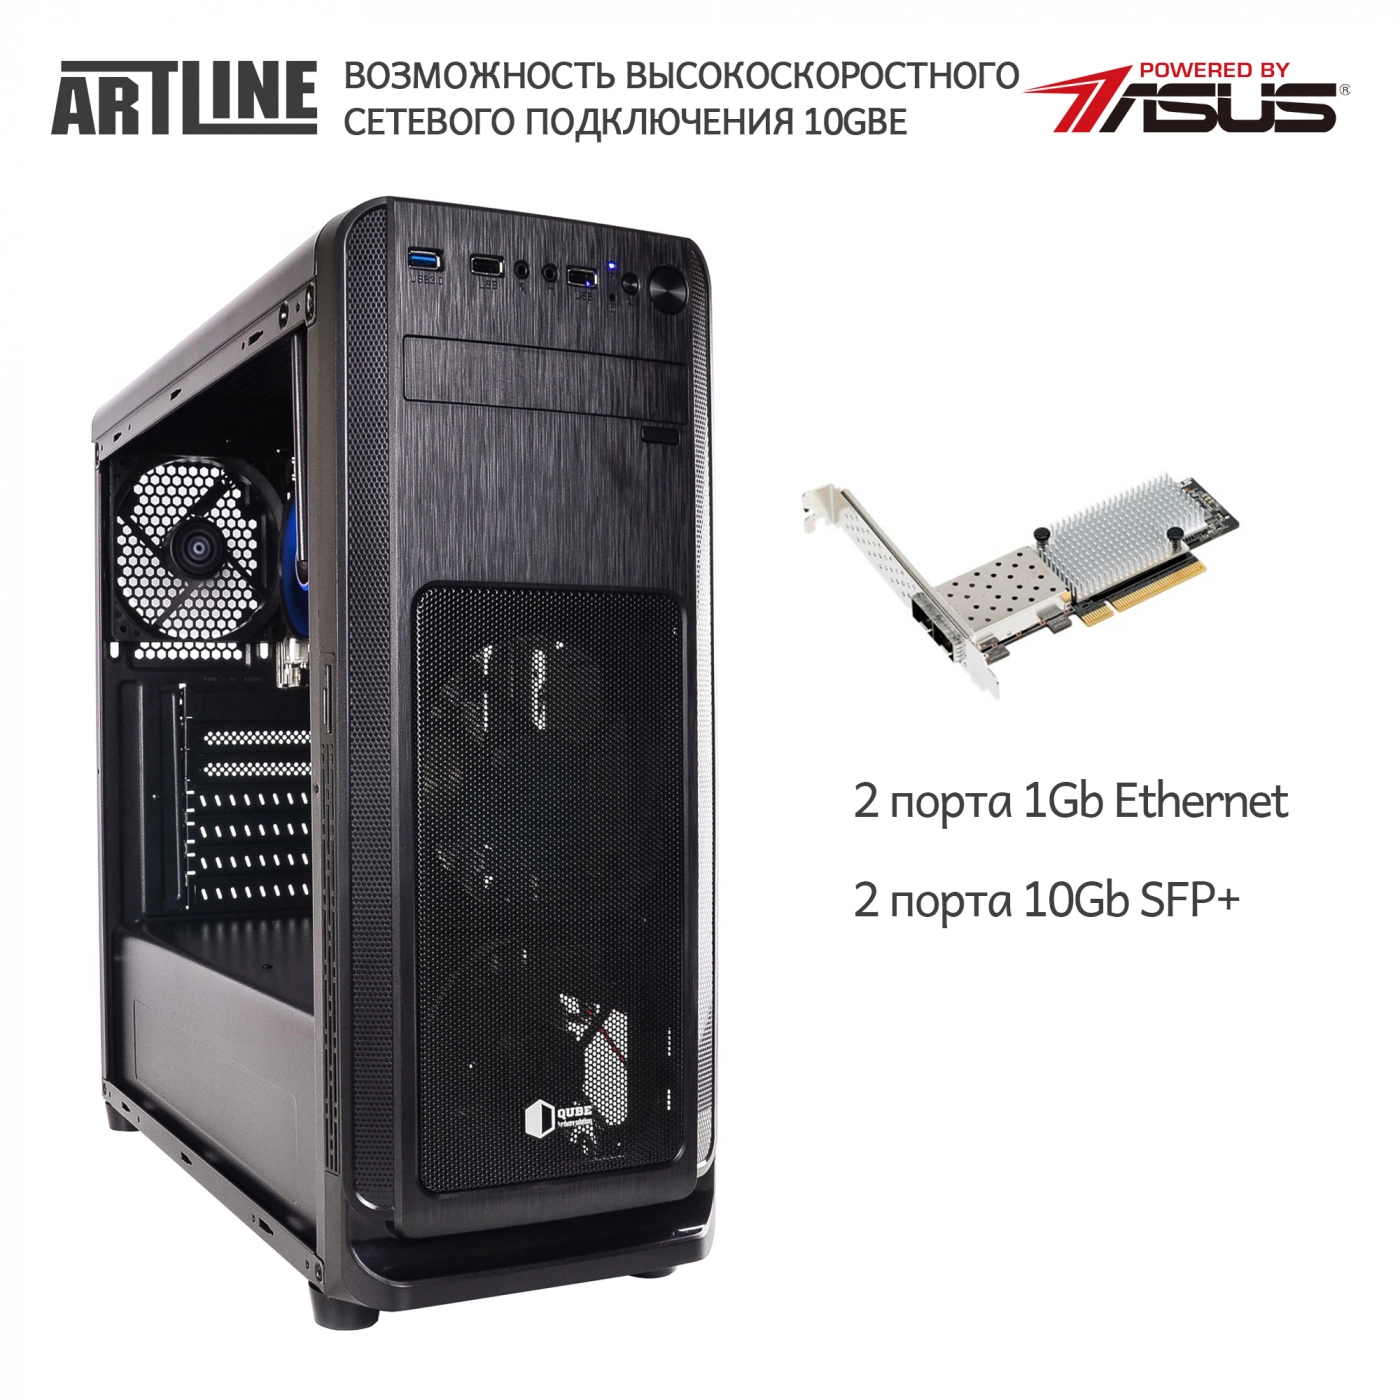 Купить Сервер ARTLINE Business T81v03 - фото 2